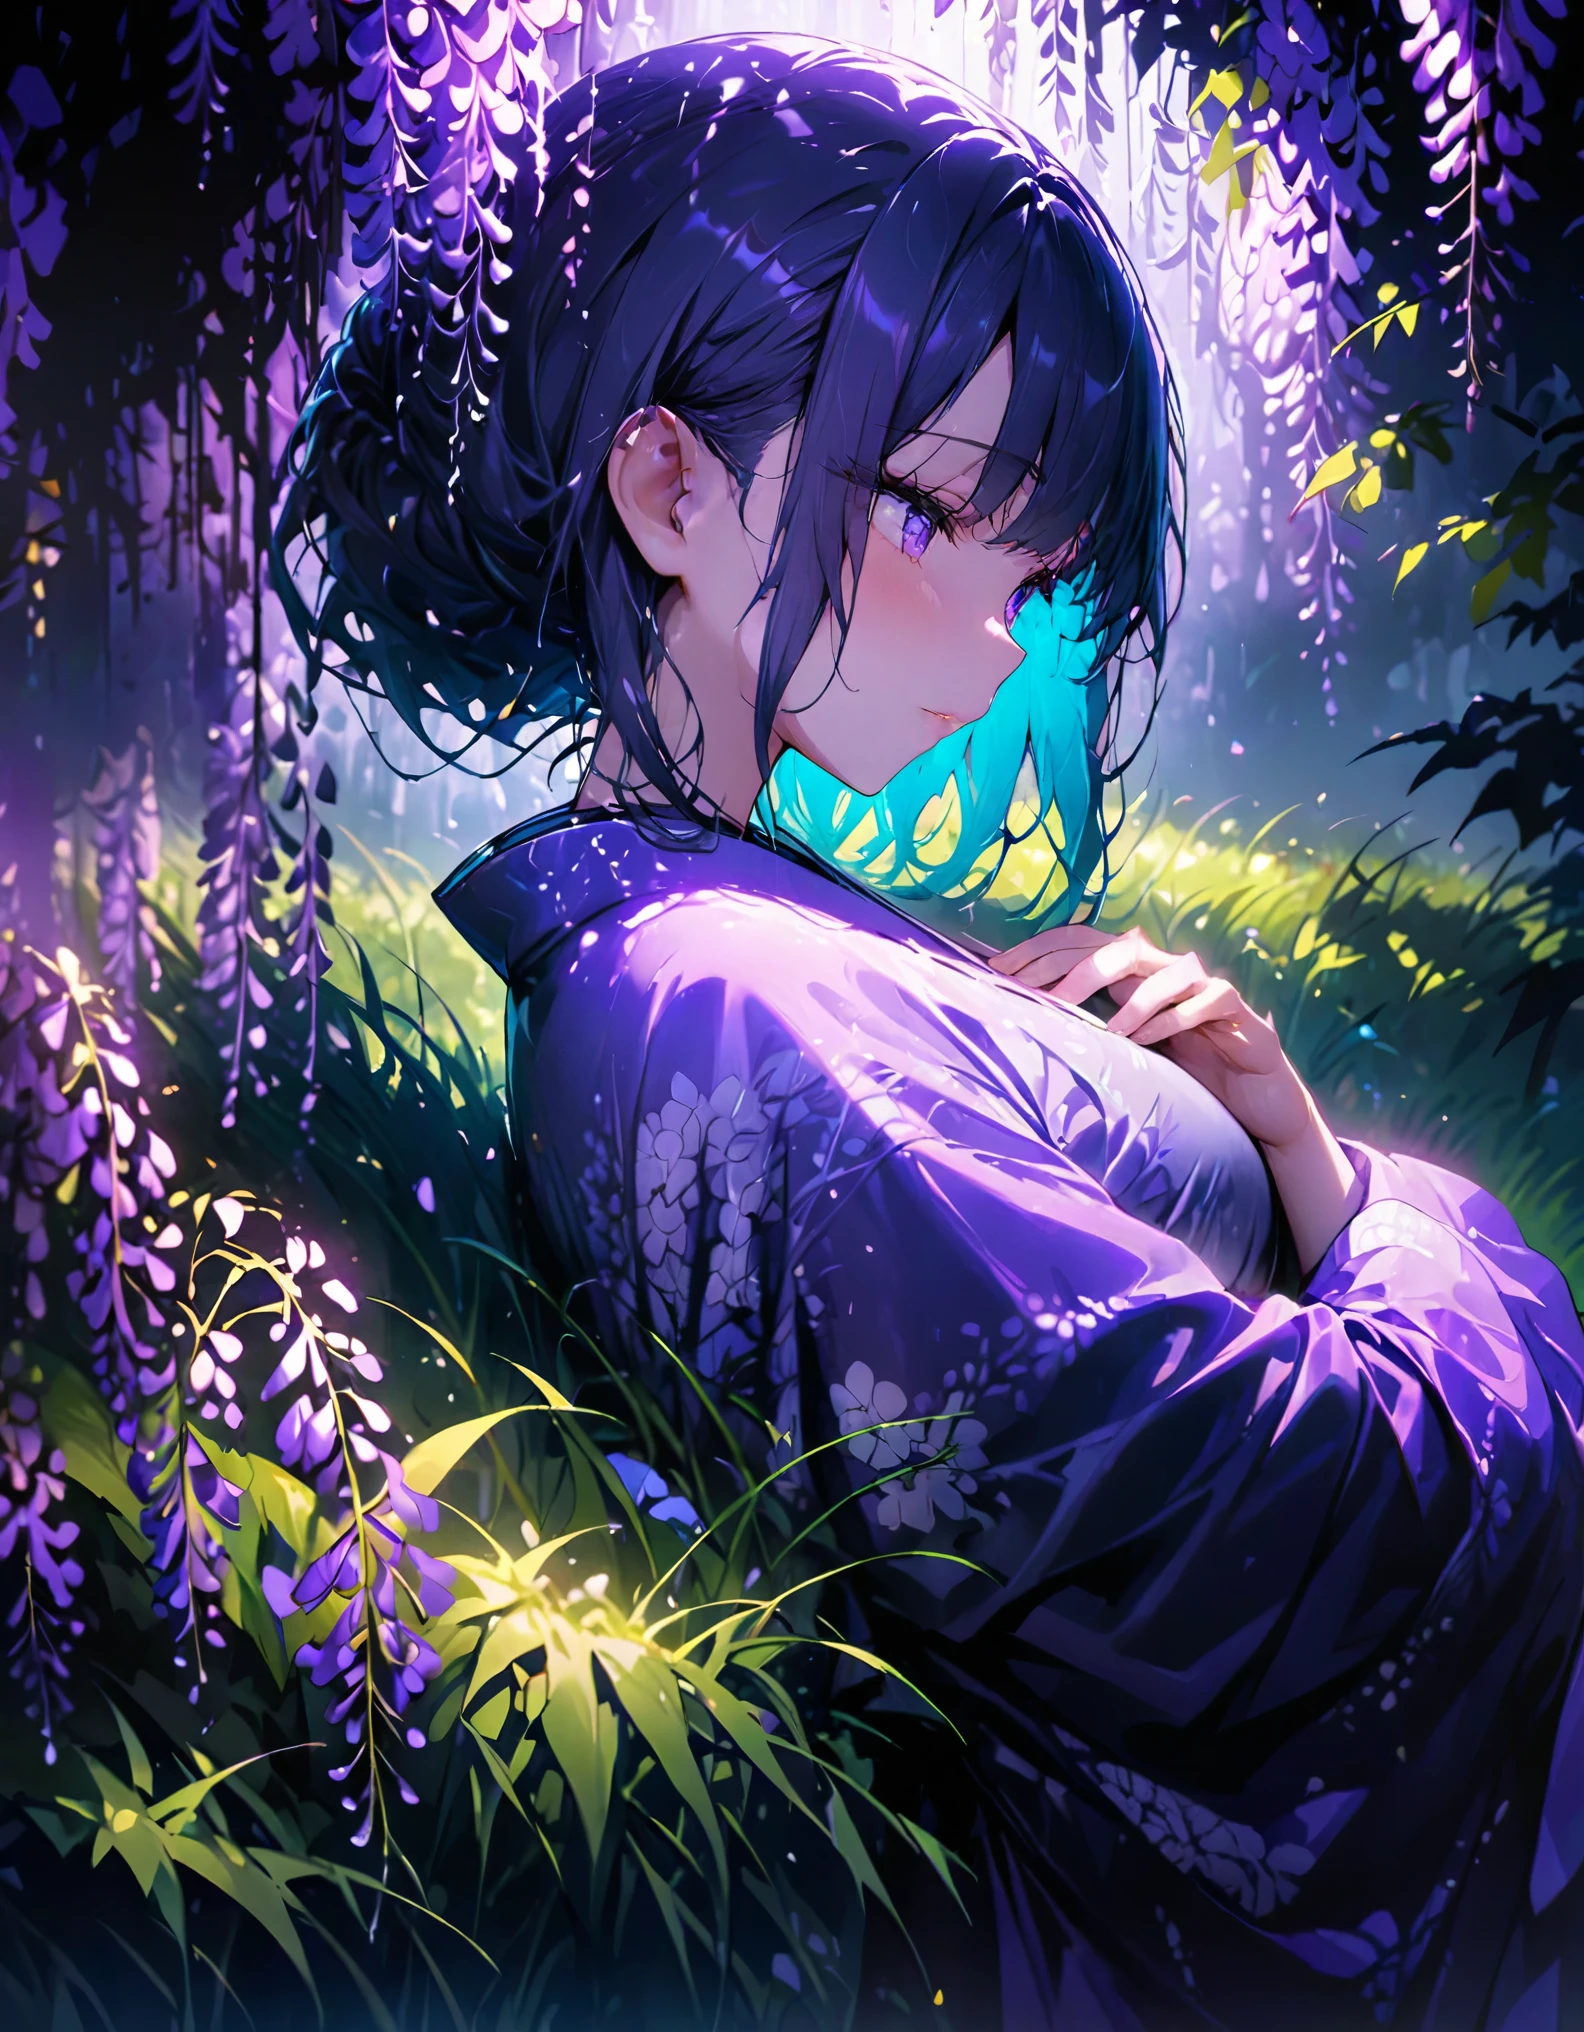 Oborozuki、Femme portant un kimono violet、regarder en bas、Fleur de glycine、l&#39;herbe verte、nuit、clair de lune、(((chef-d&#39;œuvre))), (meilleure qualité), (Ultra détaillé), (très_haut_résolution), (grand_taille du fichier), (en couleur)